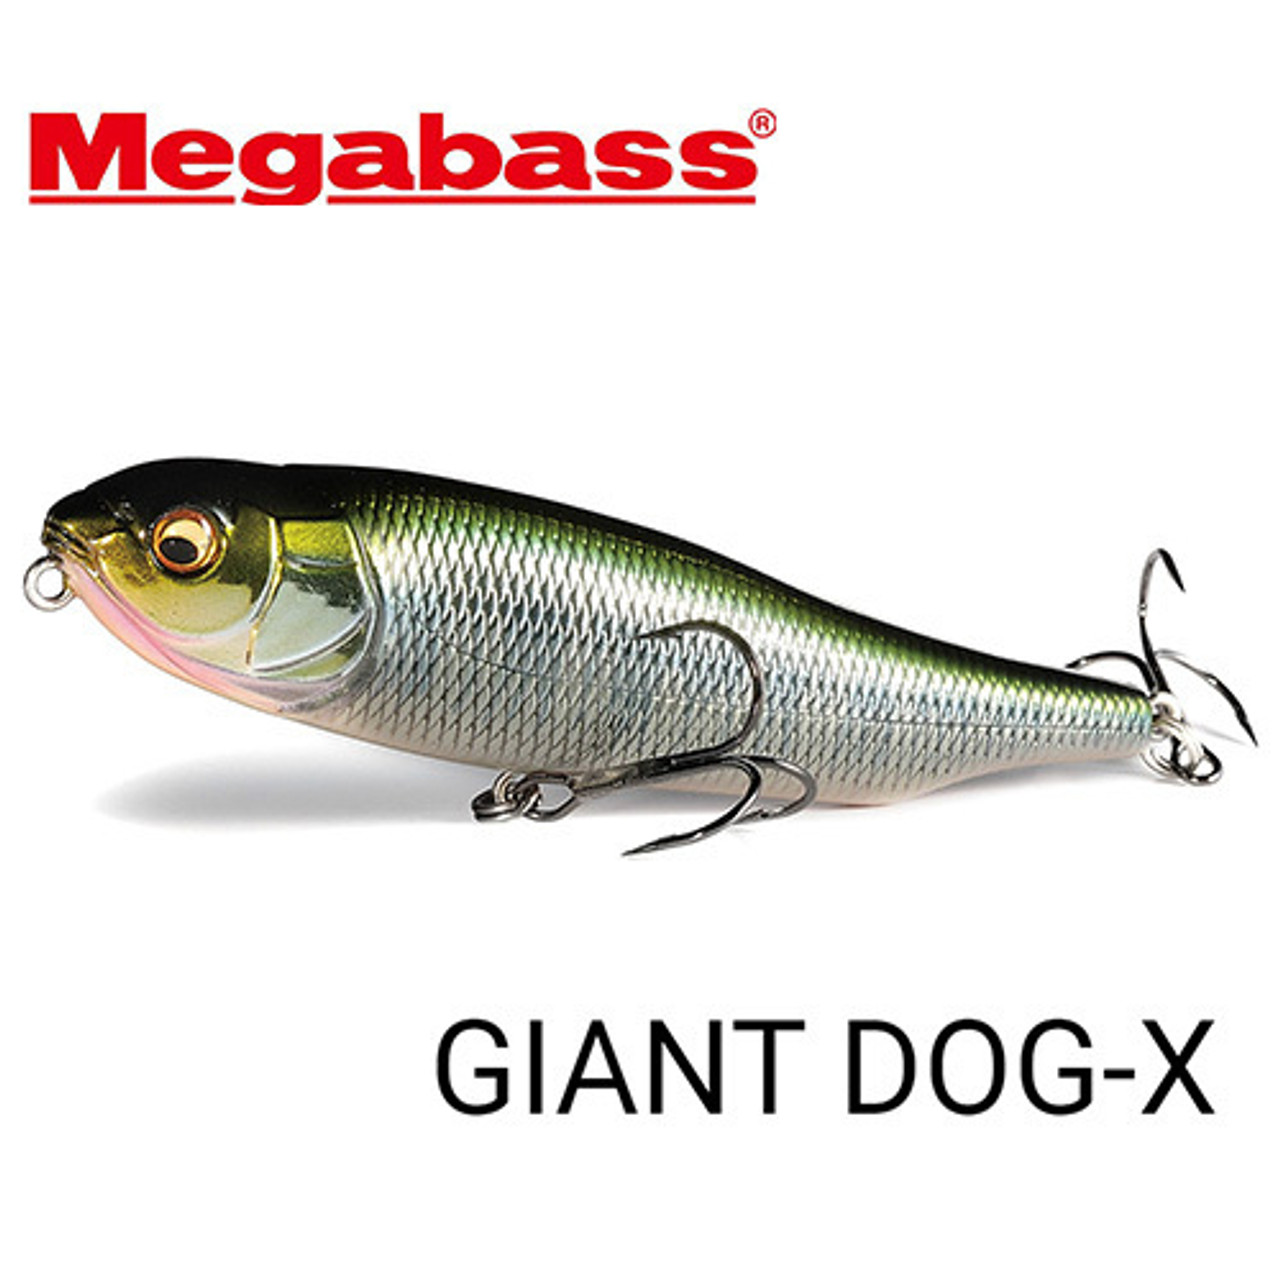 Megabass GIANT DOG-X NEW